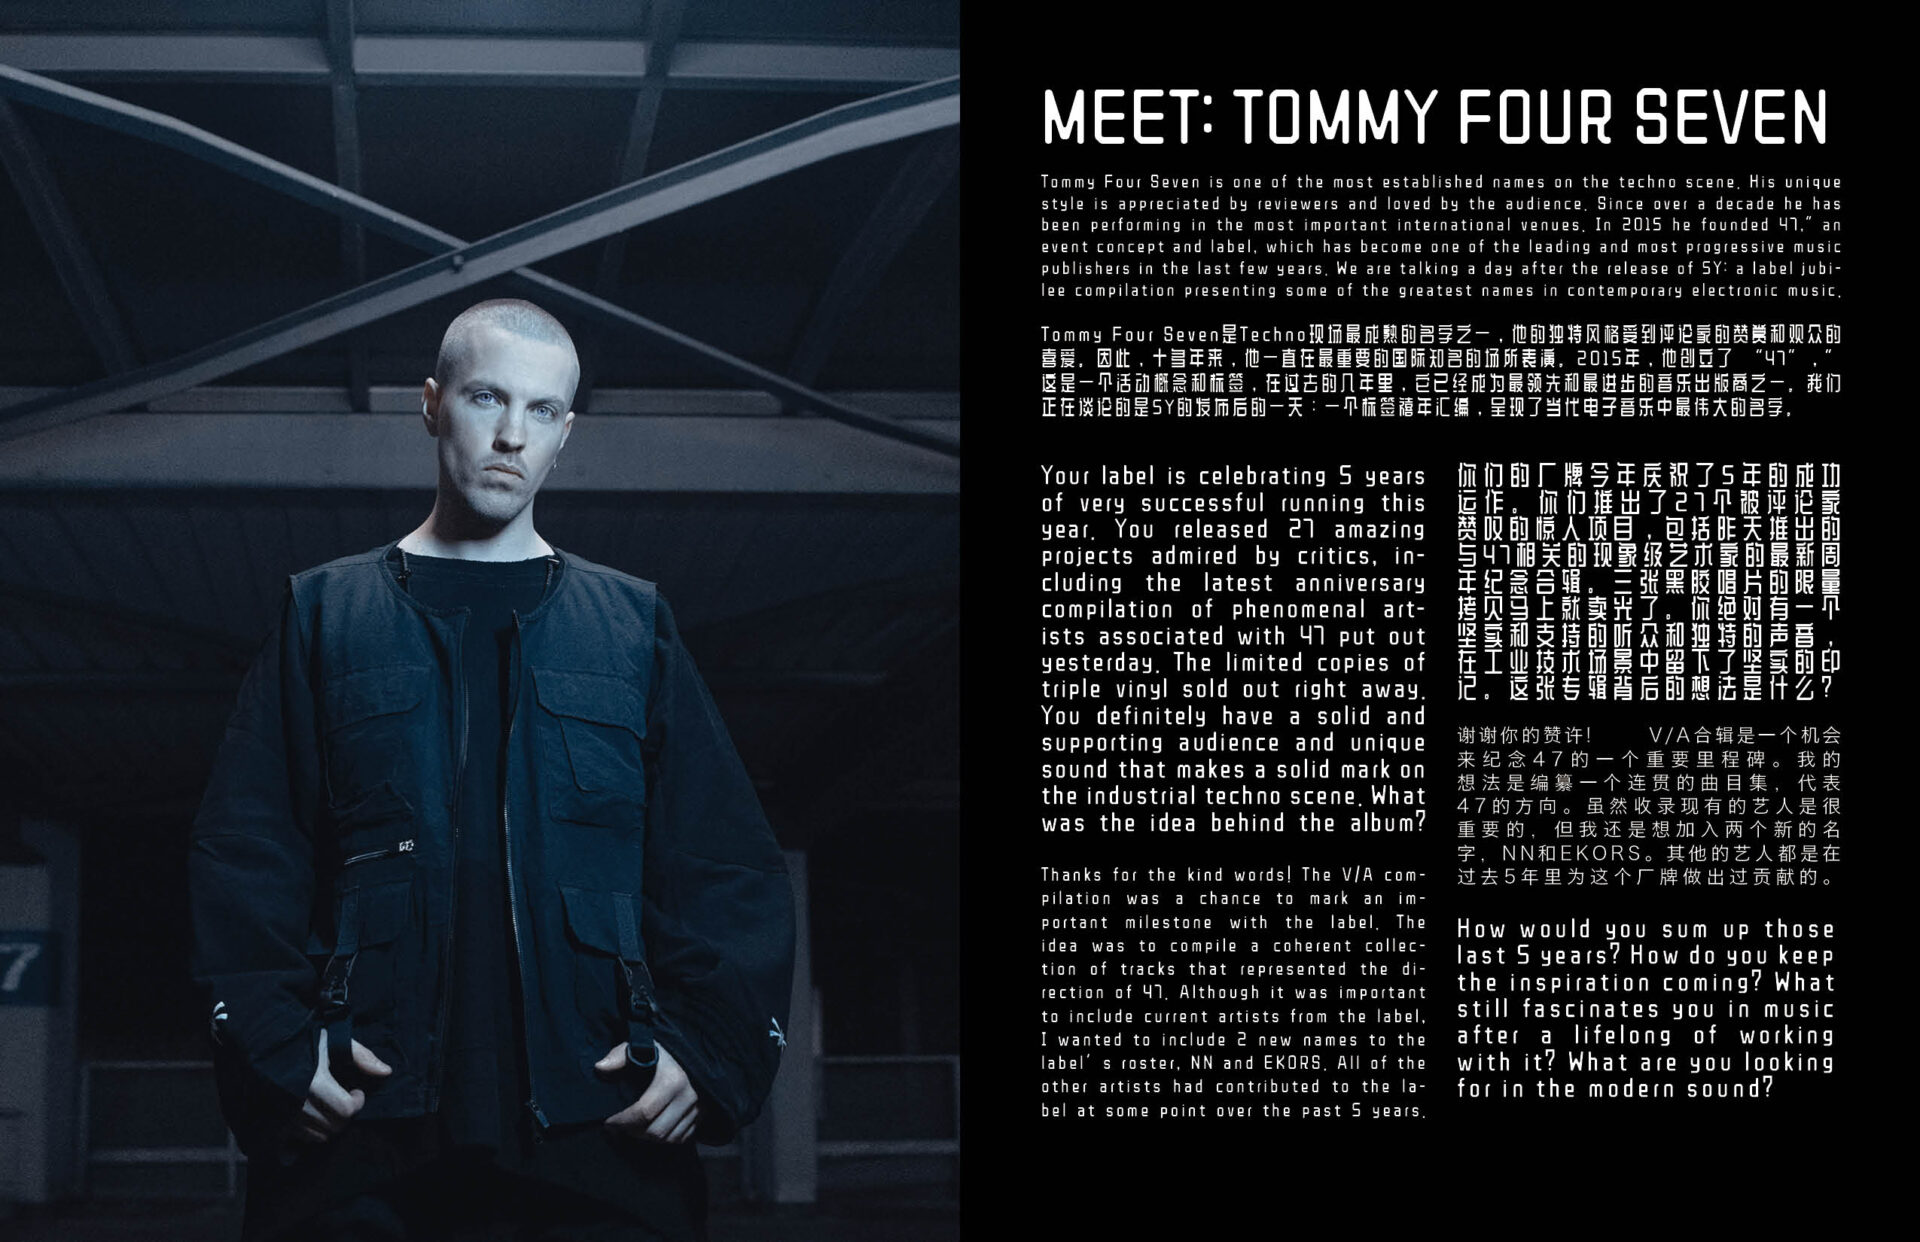 Tommy Four Seven interview by Anka Pitu and photos by Grzegorz Bacinski & Izabella Chrobok from KEYI Studio